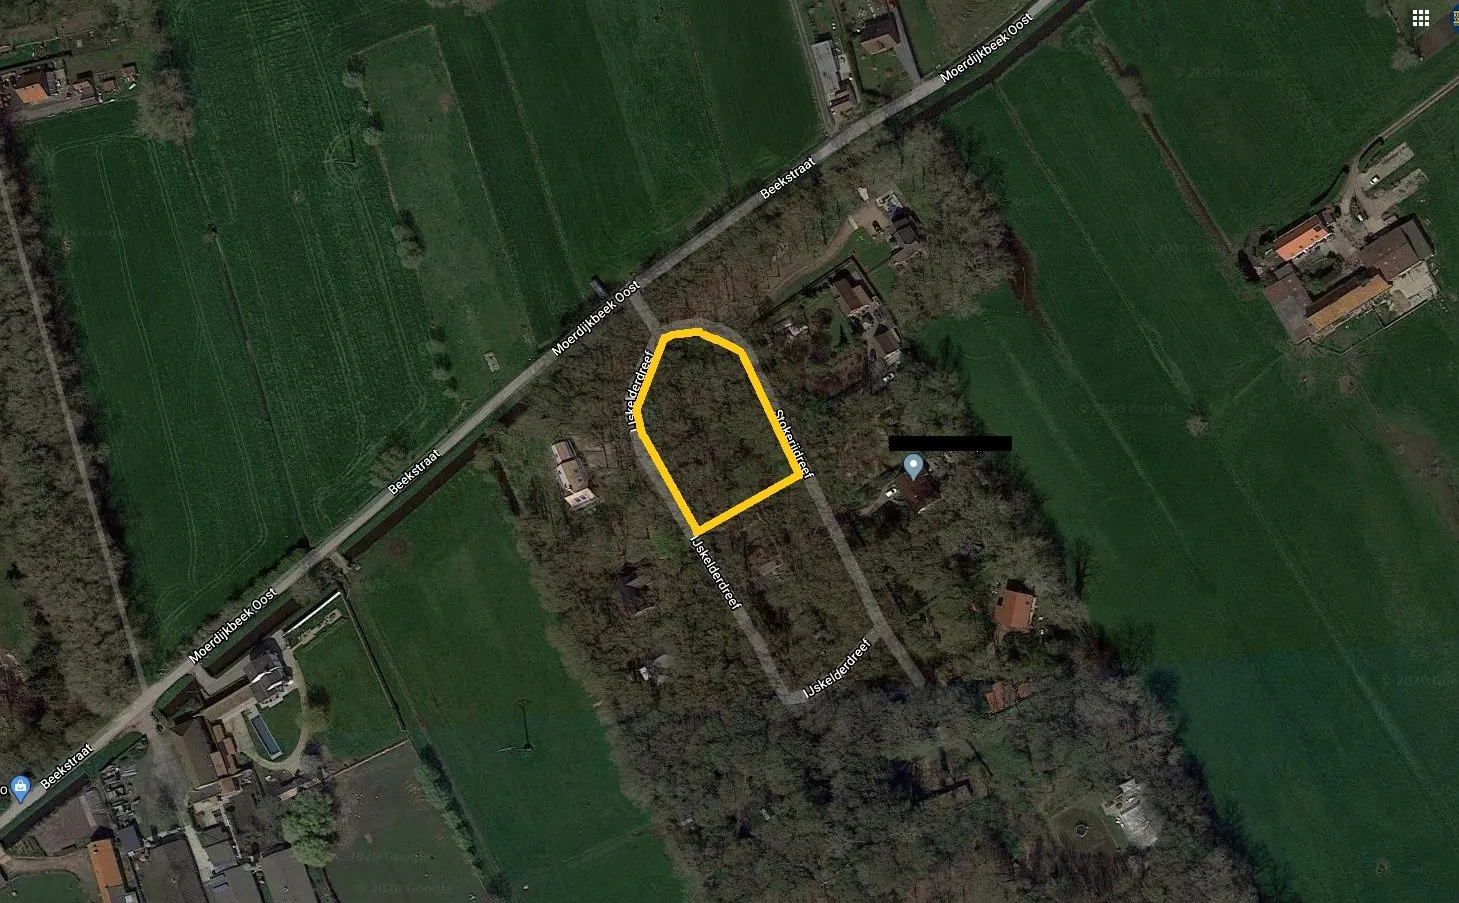 Perceel bouwgrond van 2907 m² in Leugenboombos te Koekelare. 